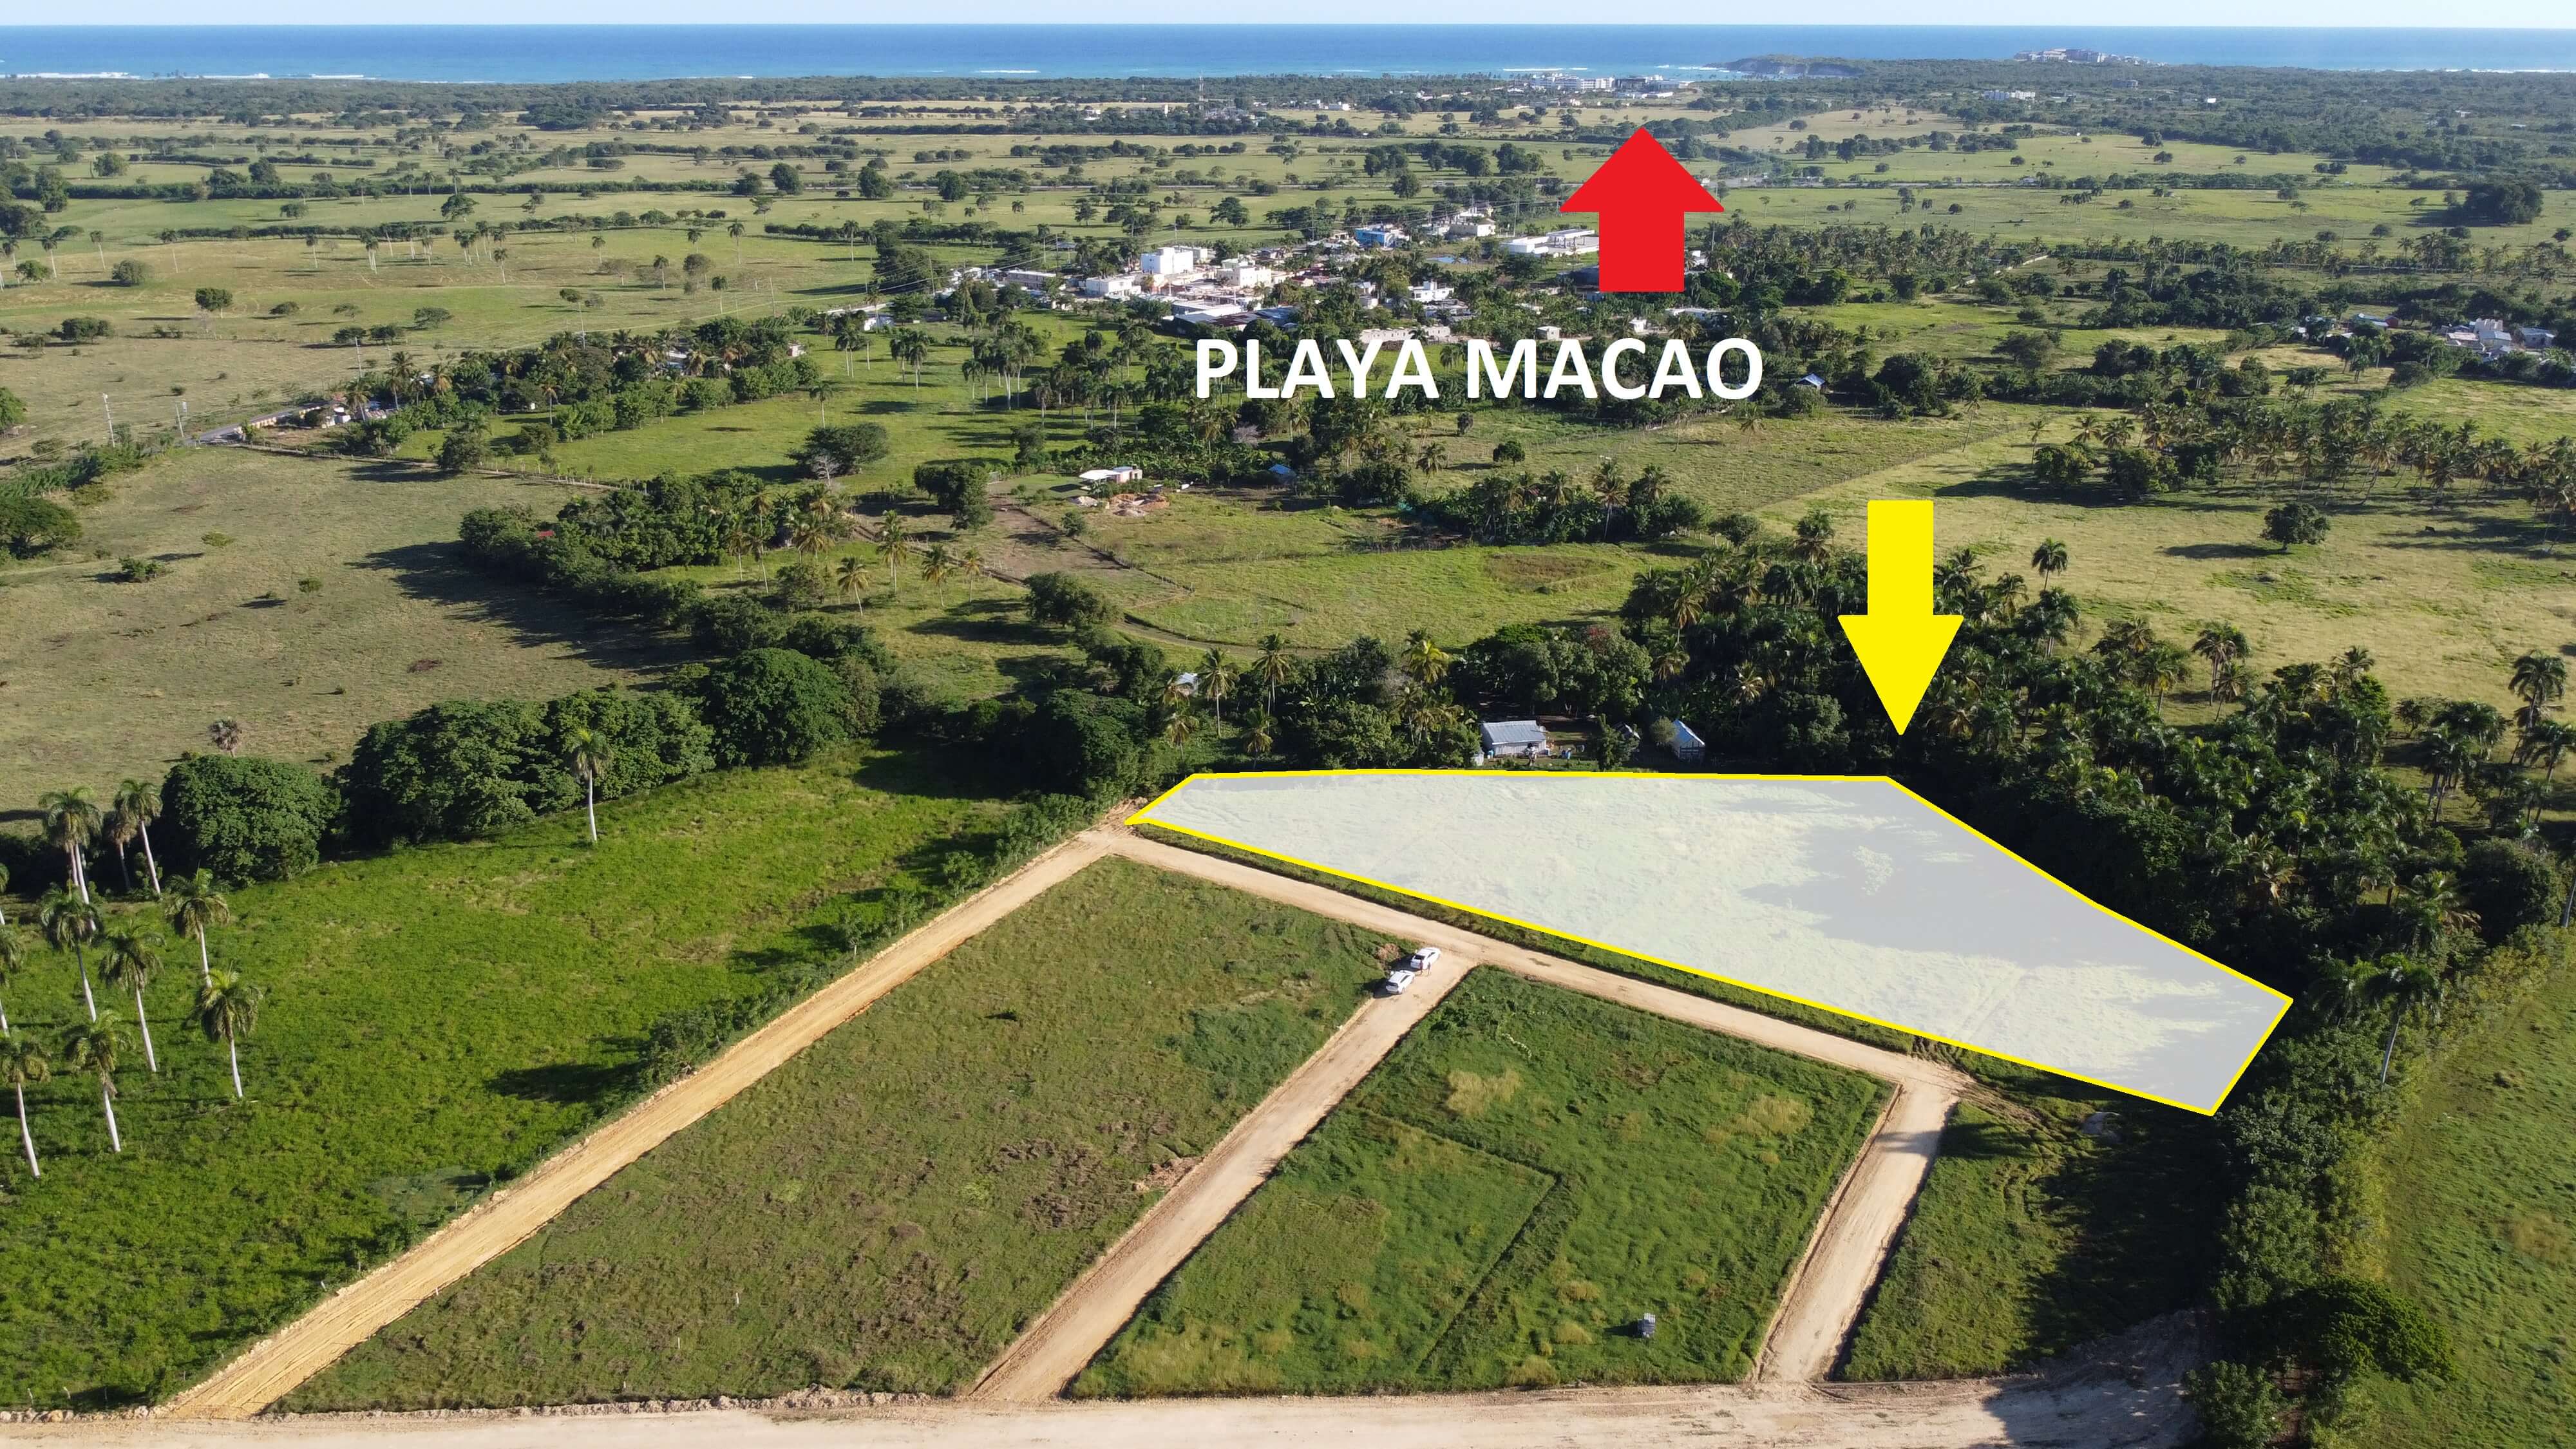 Terreno Para Inversión, A 5 Min. De La Playa Macao, Bavaro. La República Dominicana